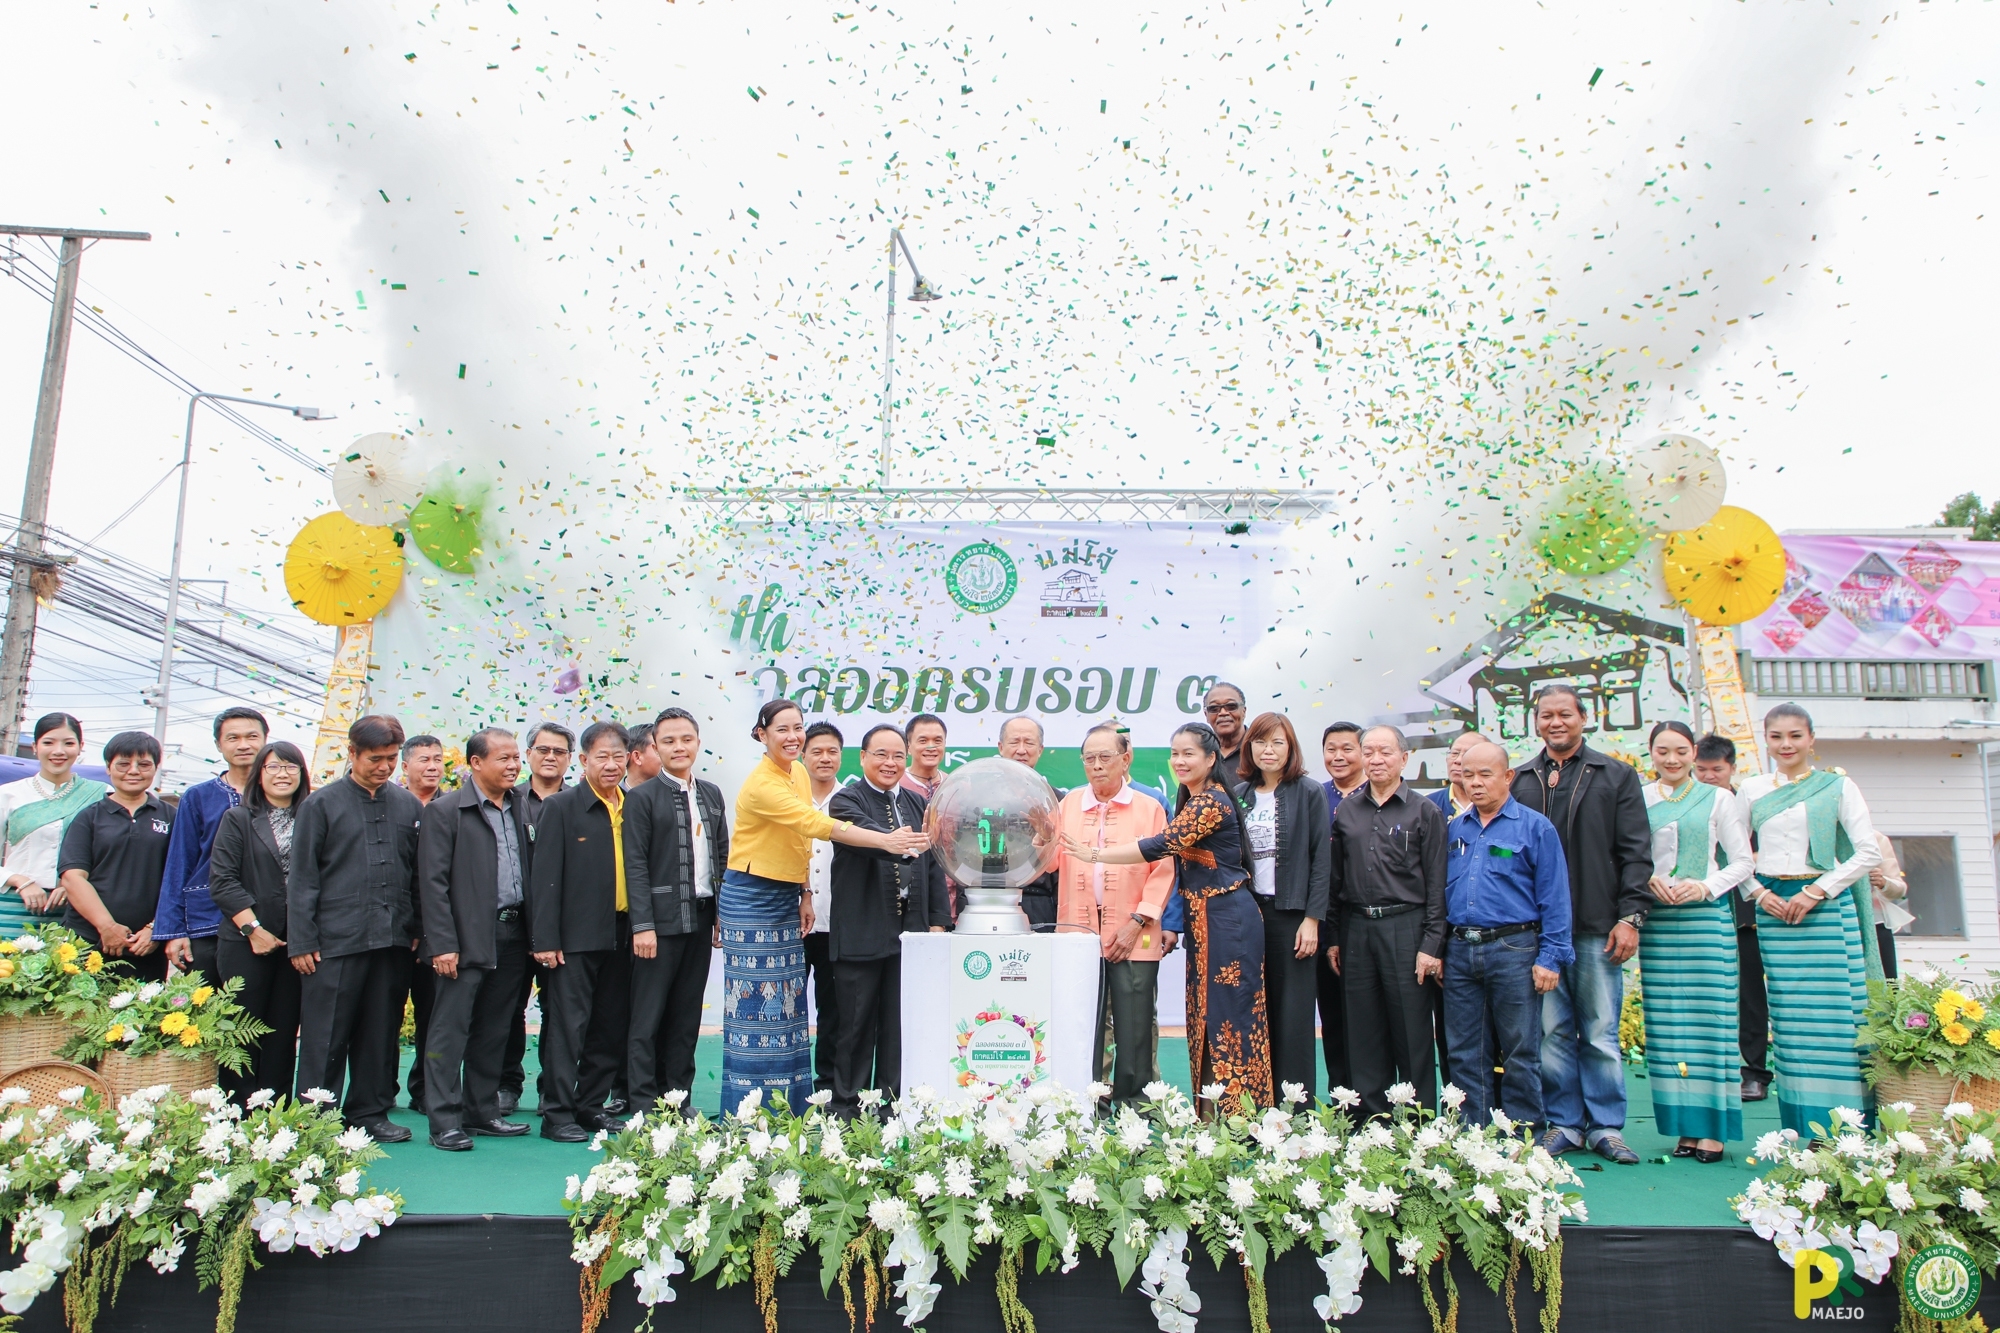 ม.แม่โจ้ จัดพิธีเปิด กาดแม่โจ้ 2477 และ การประกวดฟ้อนเล็บล้านนาไทย ครั้งที่ 8 